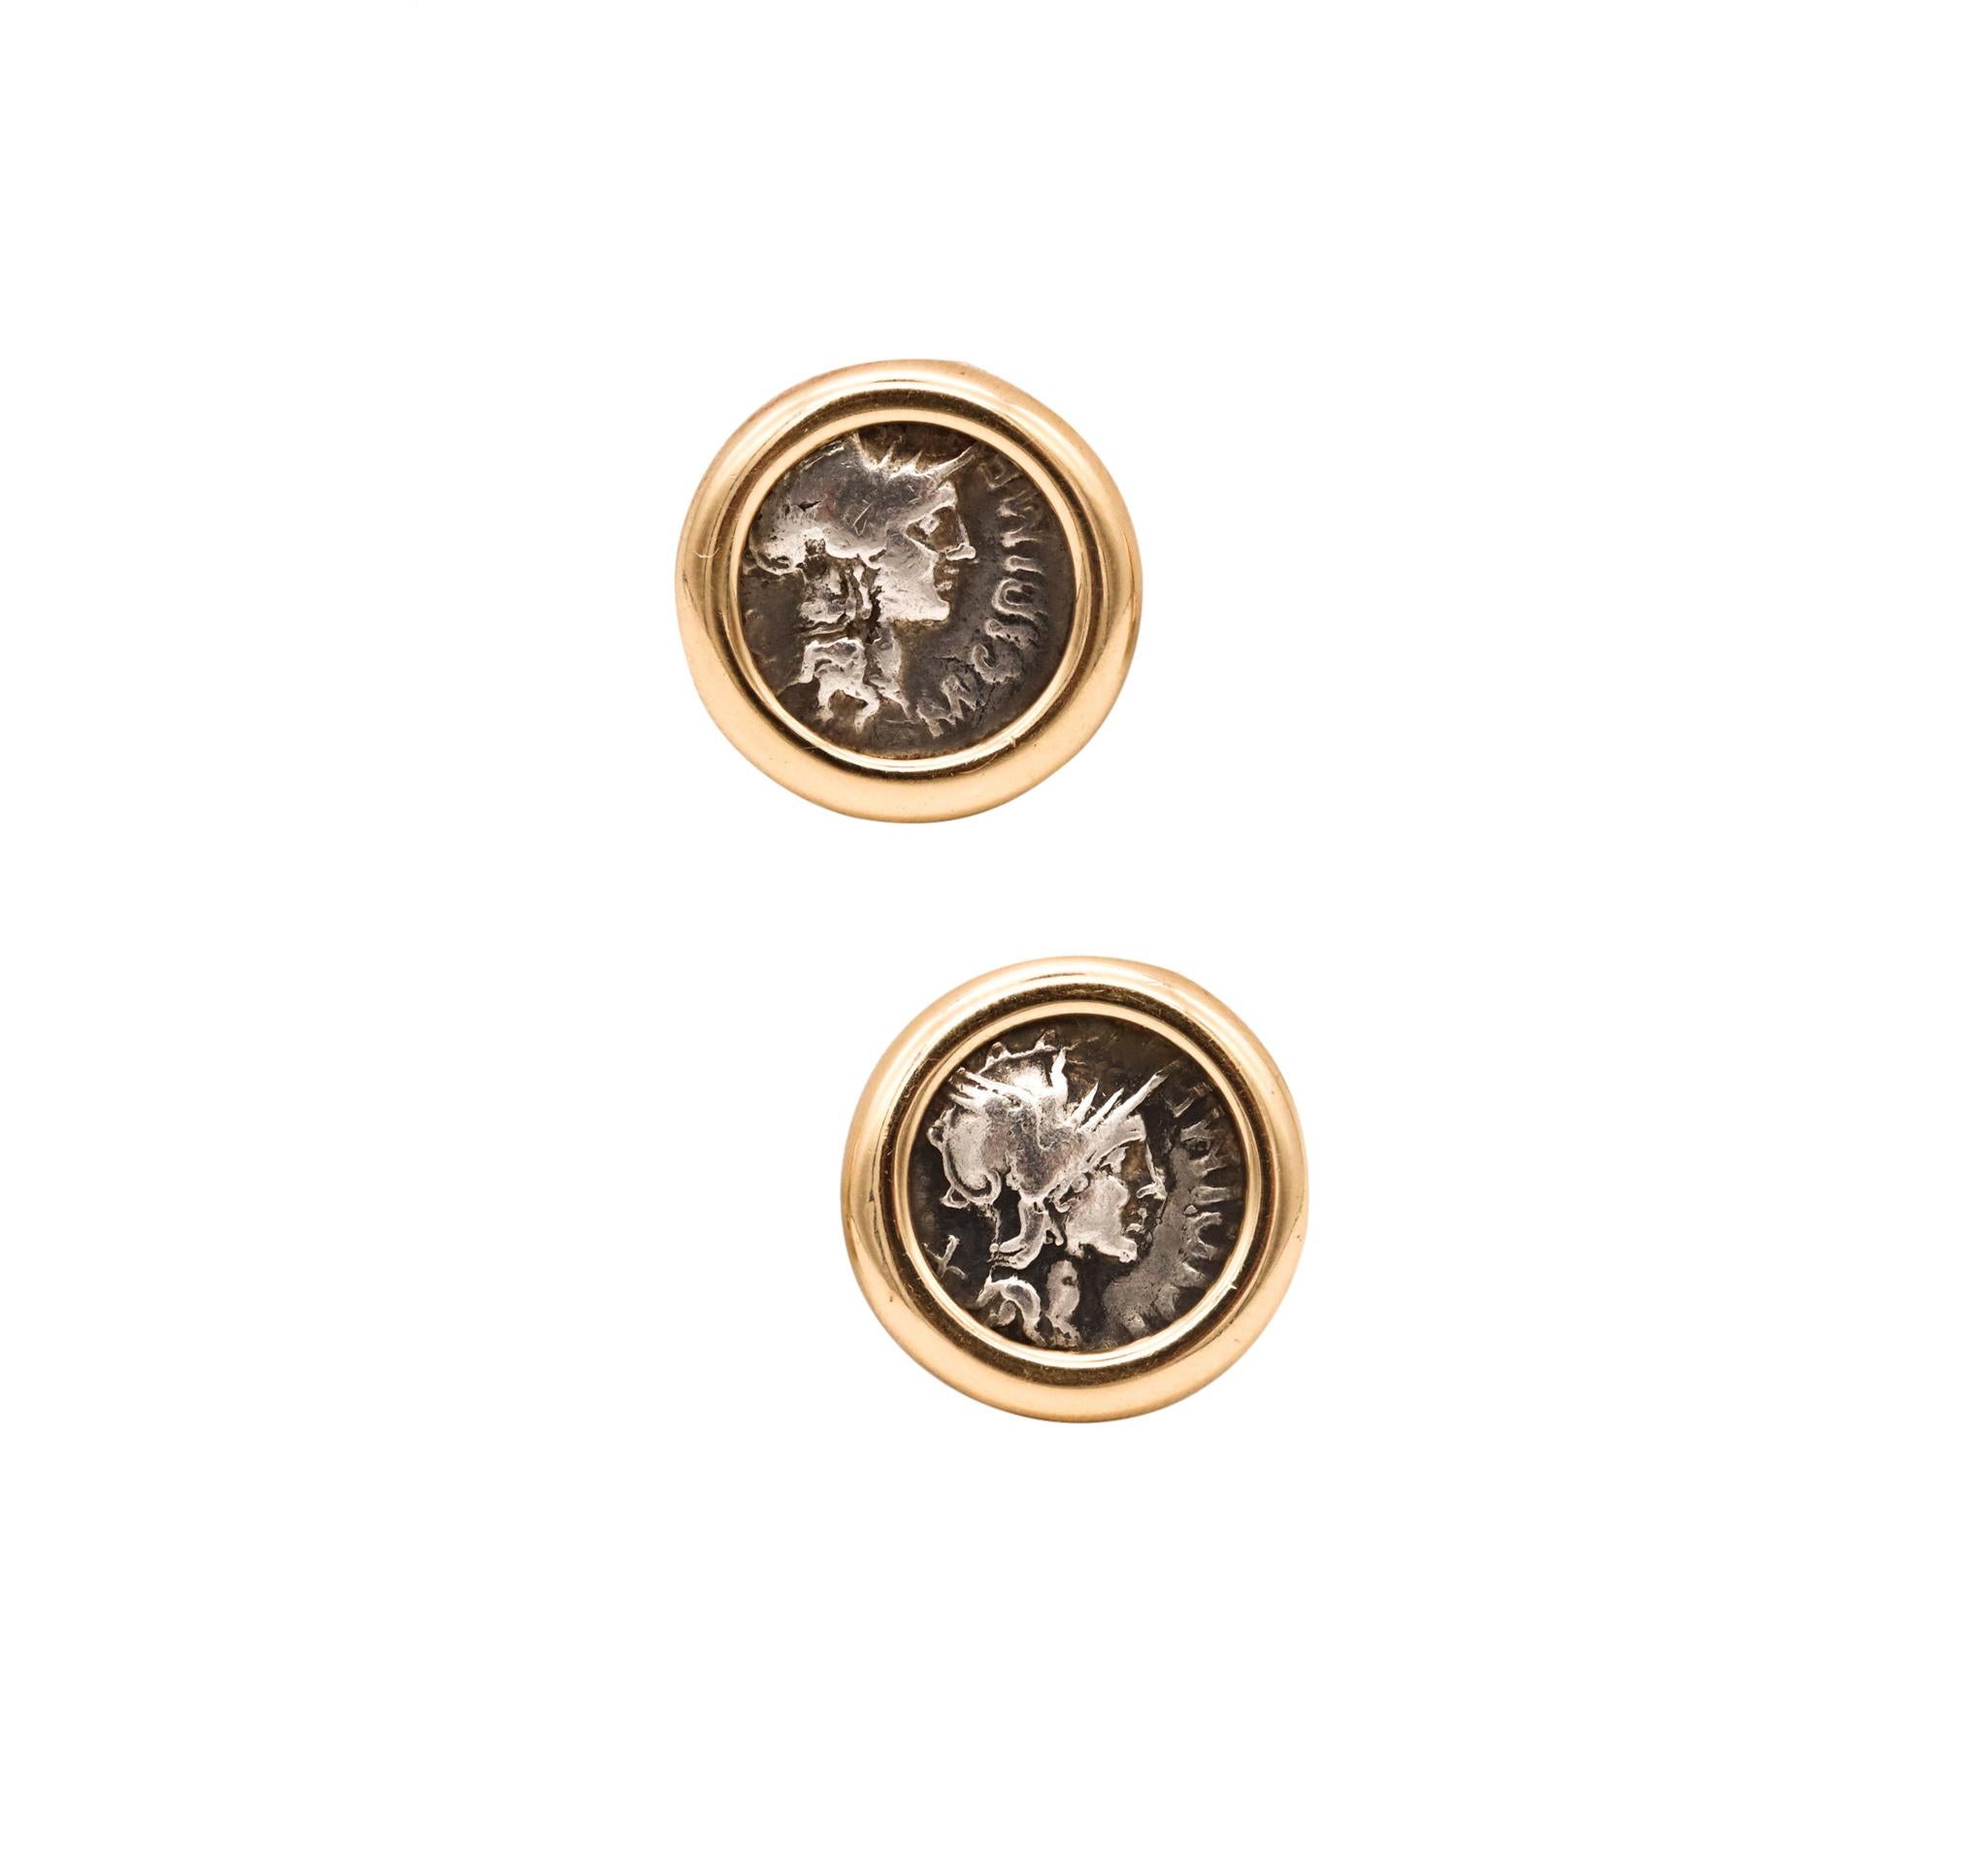 Paire de boucles d'oreilles en pièces de monnaie avec Denari des anciens Romains.

Une élégante paire d'Eleg en pièces de monnaie de la Rome antique, réalisée en or jaune massif de 18 carats avec une finition hautement polie. Ils sont dotés d'une